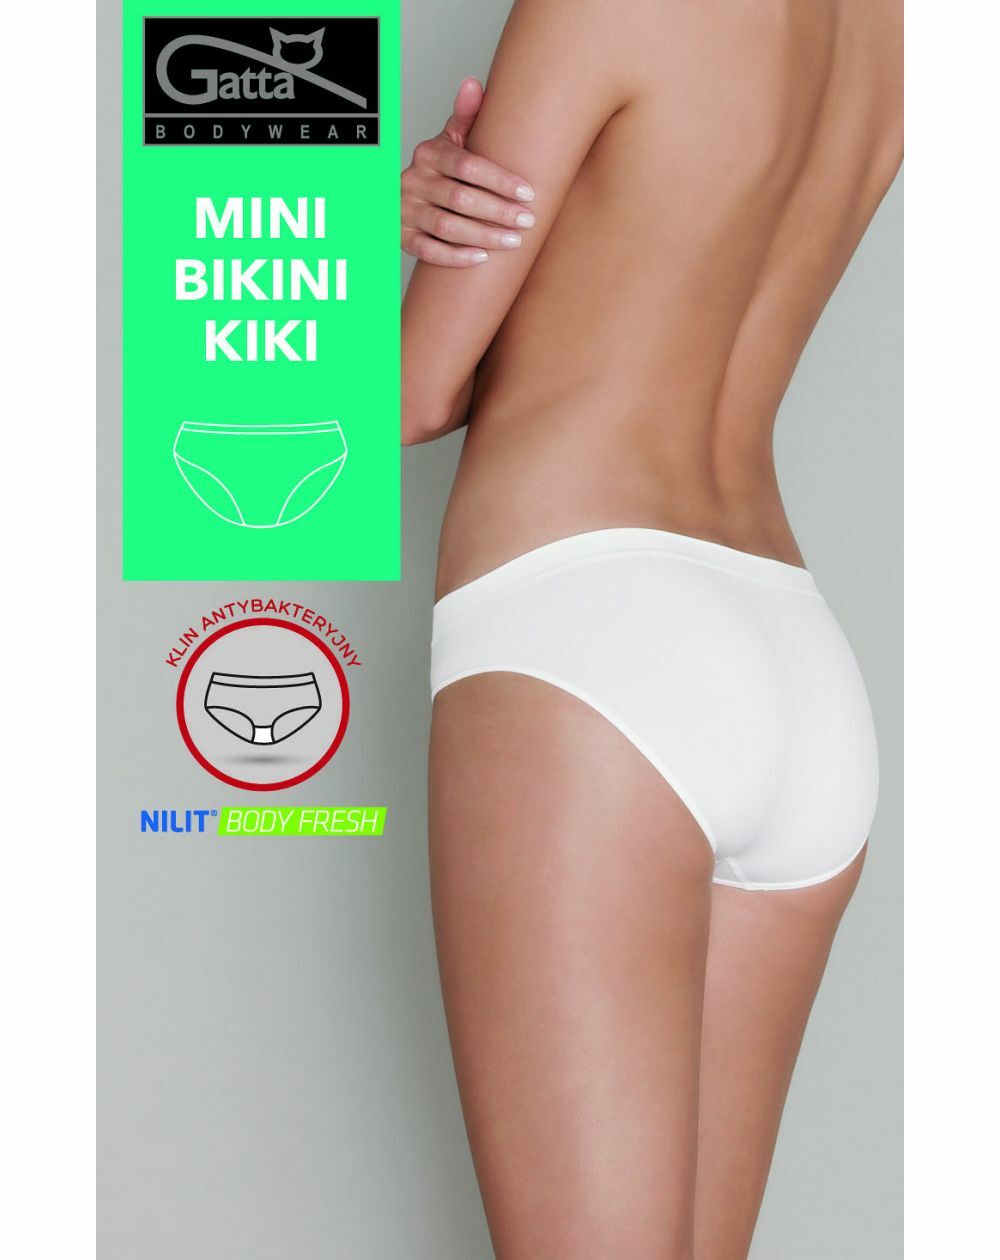 Kiki Gatta Mini-Bikinislip